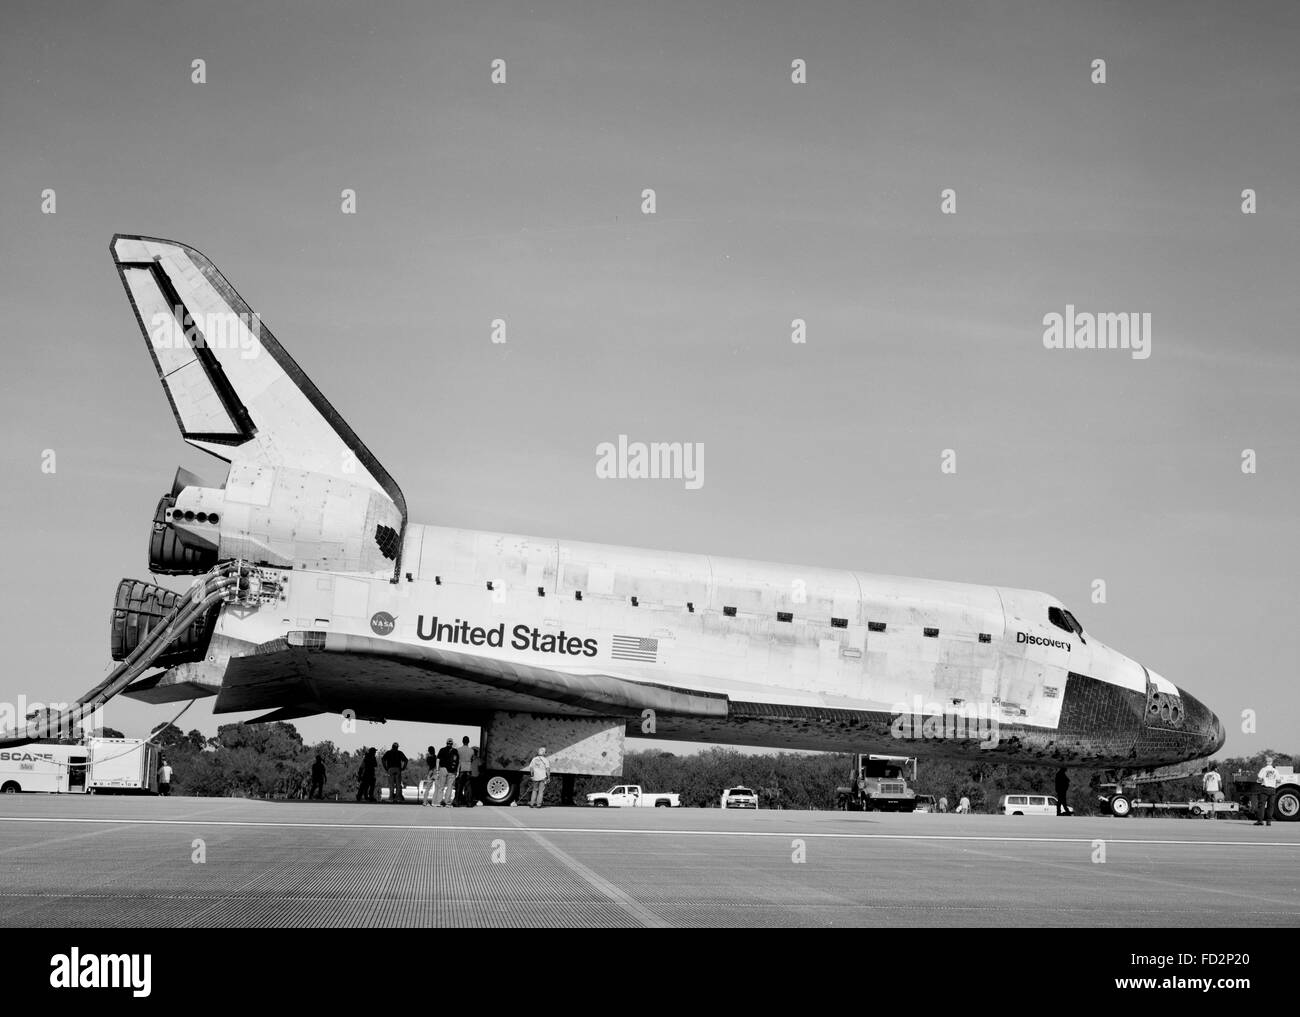 Orbiter scoperta sulla pista 33 presso il Kennedy Space Center in fase di post elaborazione di volo dopo una missione spaziale, Florida, Stati Uniti d'America. Foto Stock